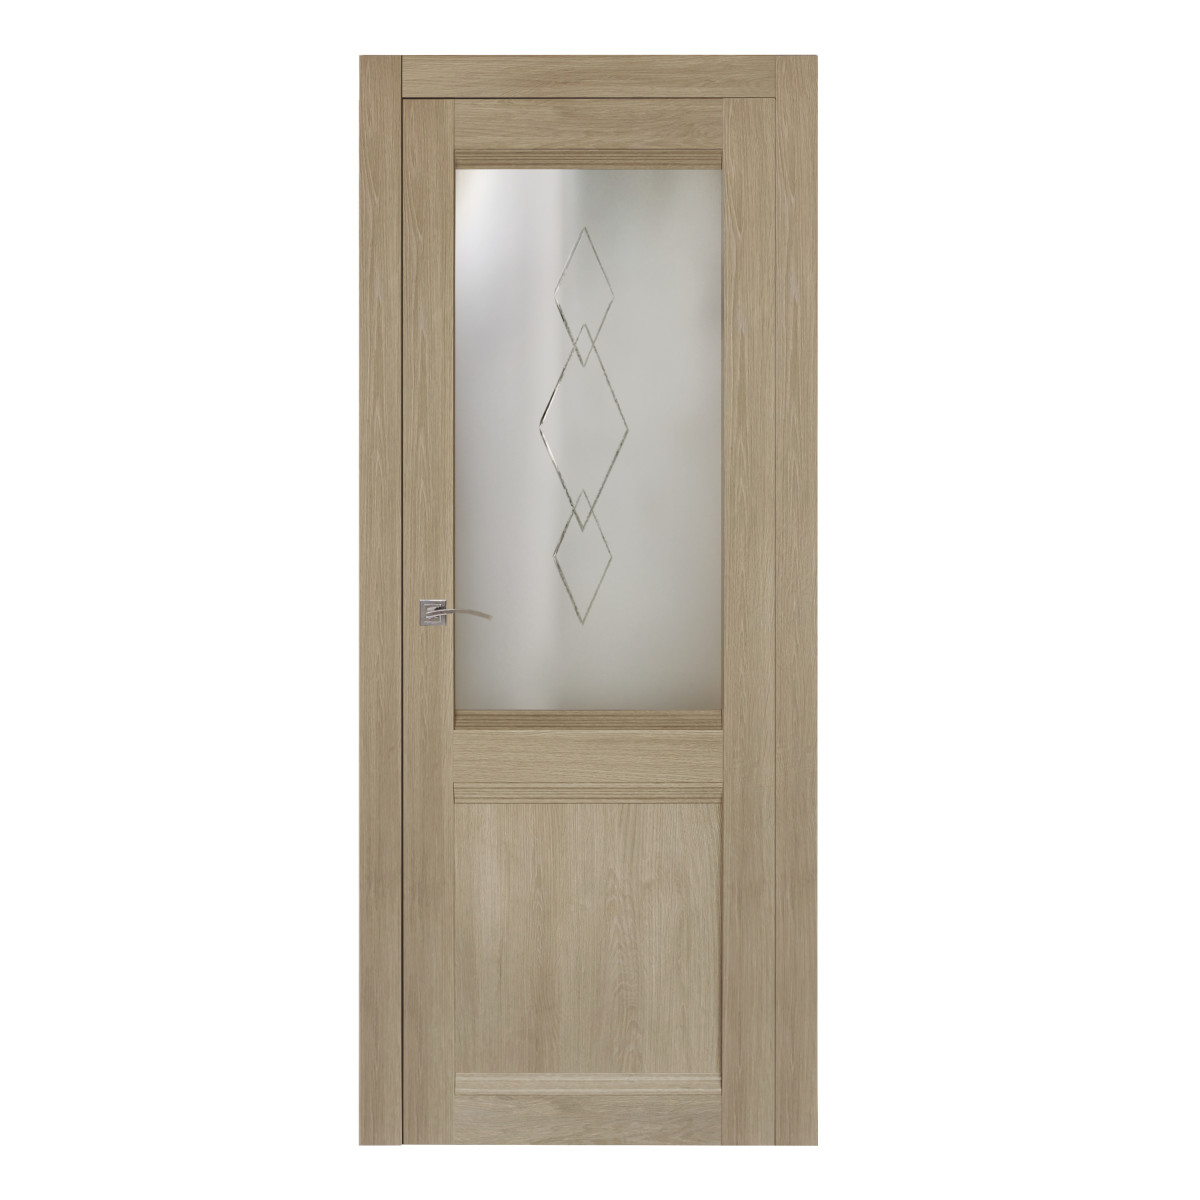 Дверь межкомнатная остеклённая Арагона 60х200 см цвет дуб тёрнер с фурнитурой